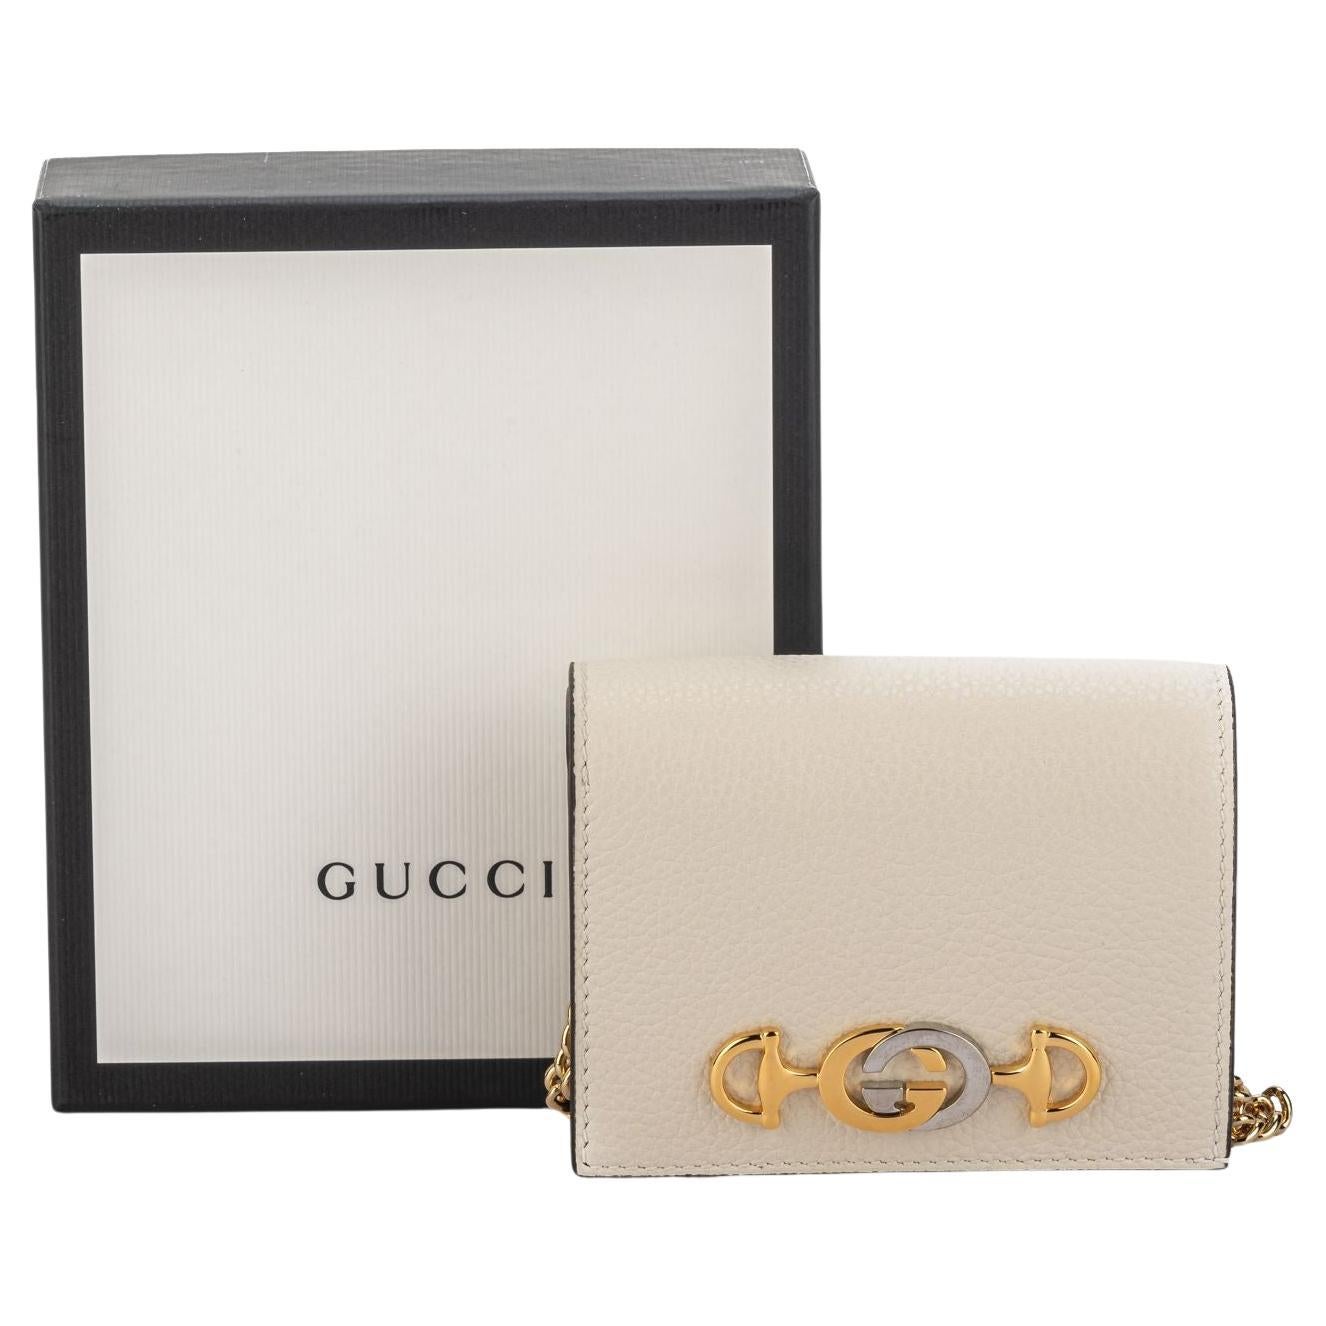 Gucci New Cream Mini Bag Cream Leather For Sale